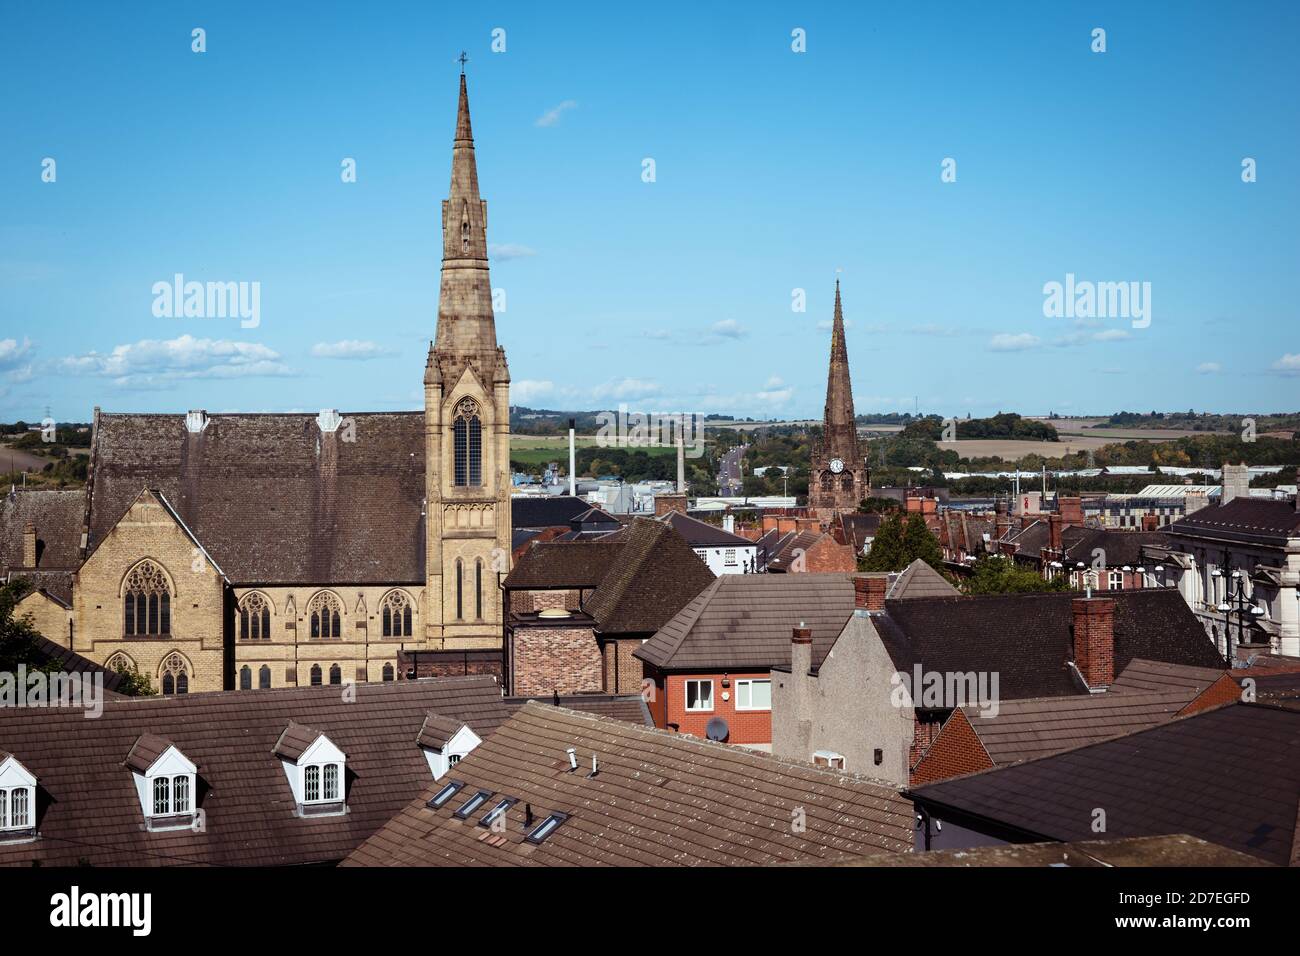 Une vue panoramique sur le centre-ville de Rotherham, montrant les toits avec les flèches des églises gothiques et méthodistes Banque D'Images